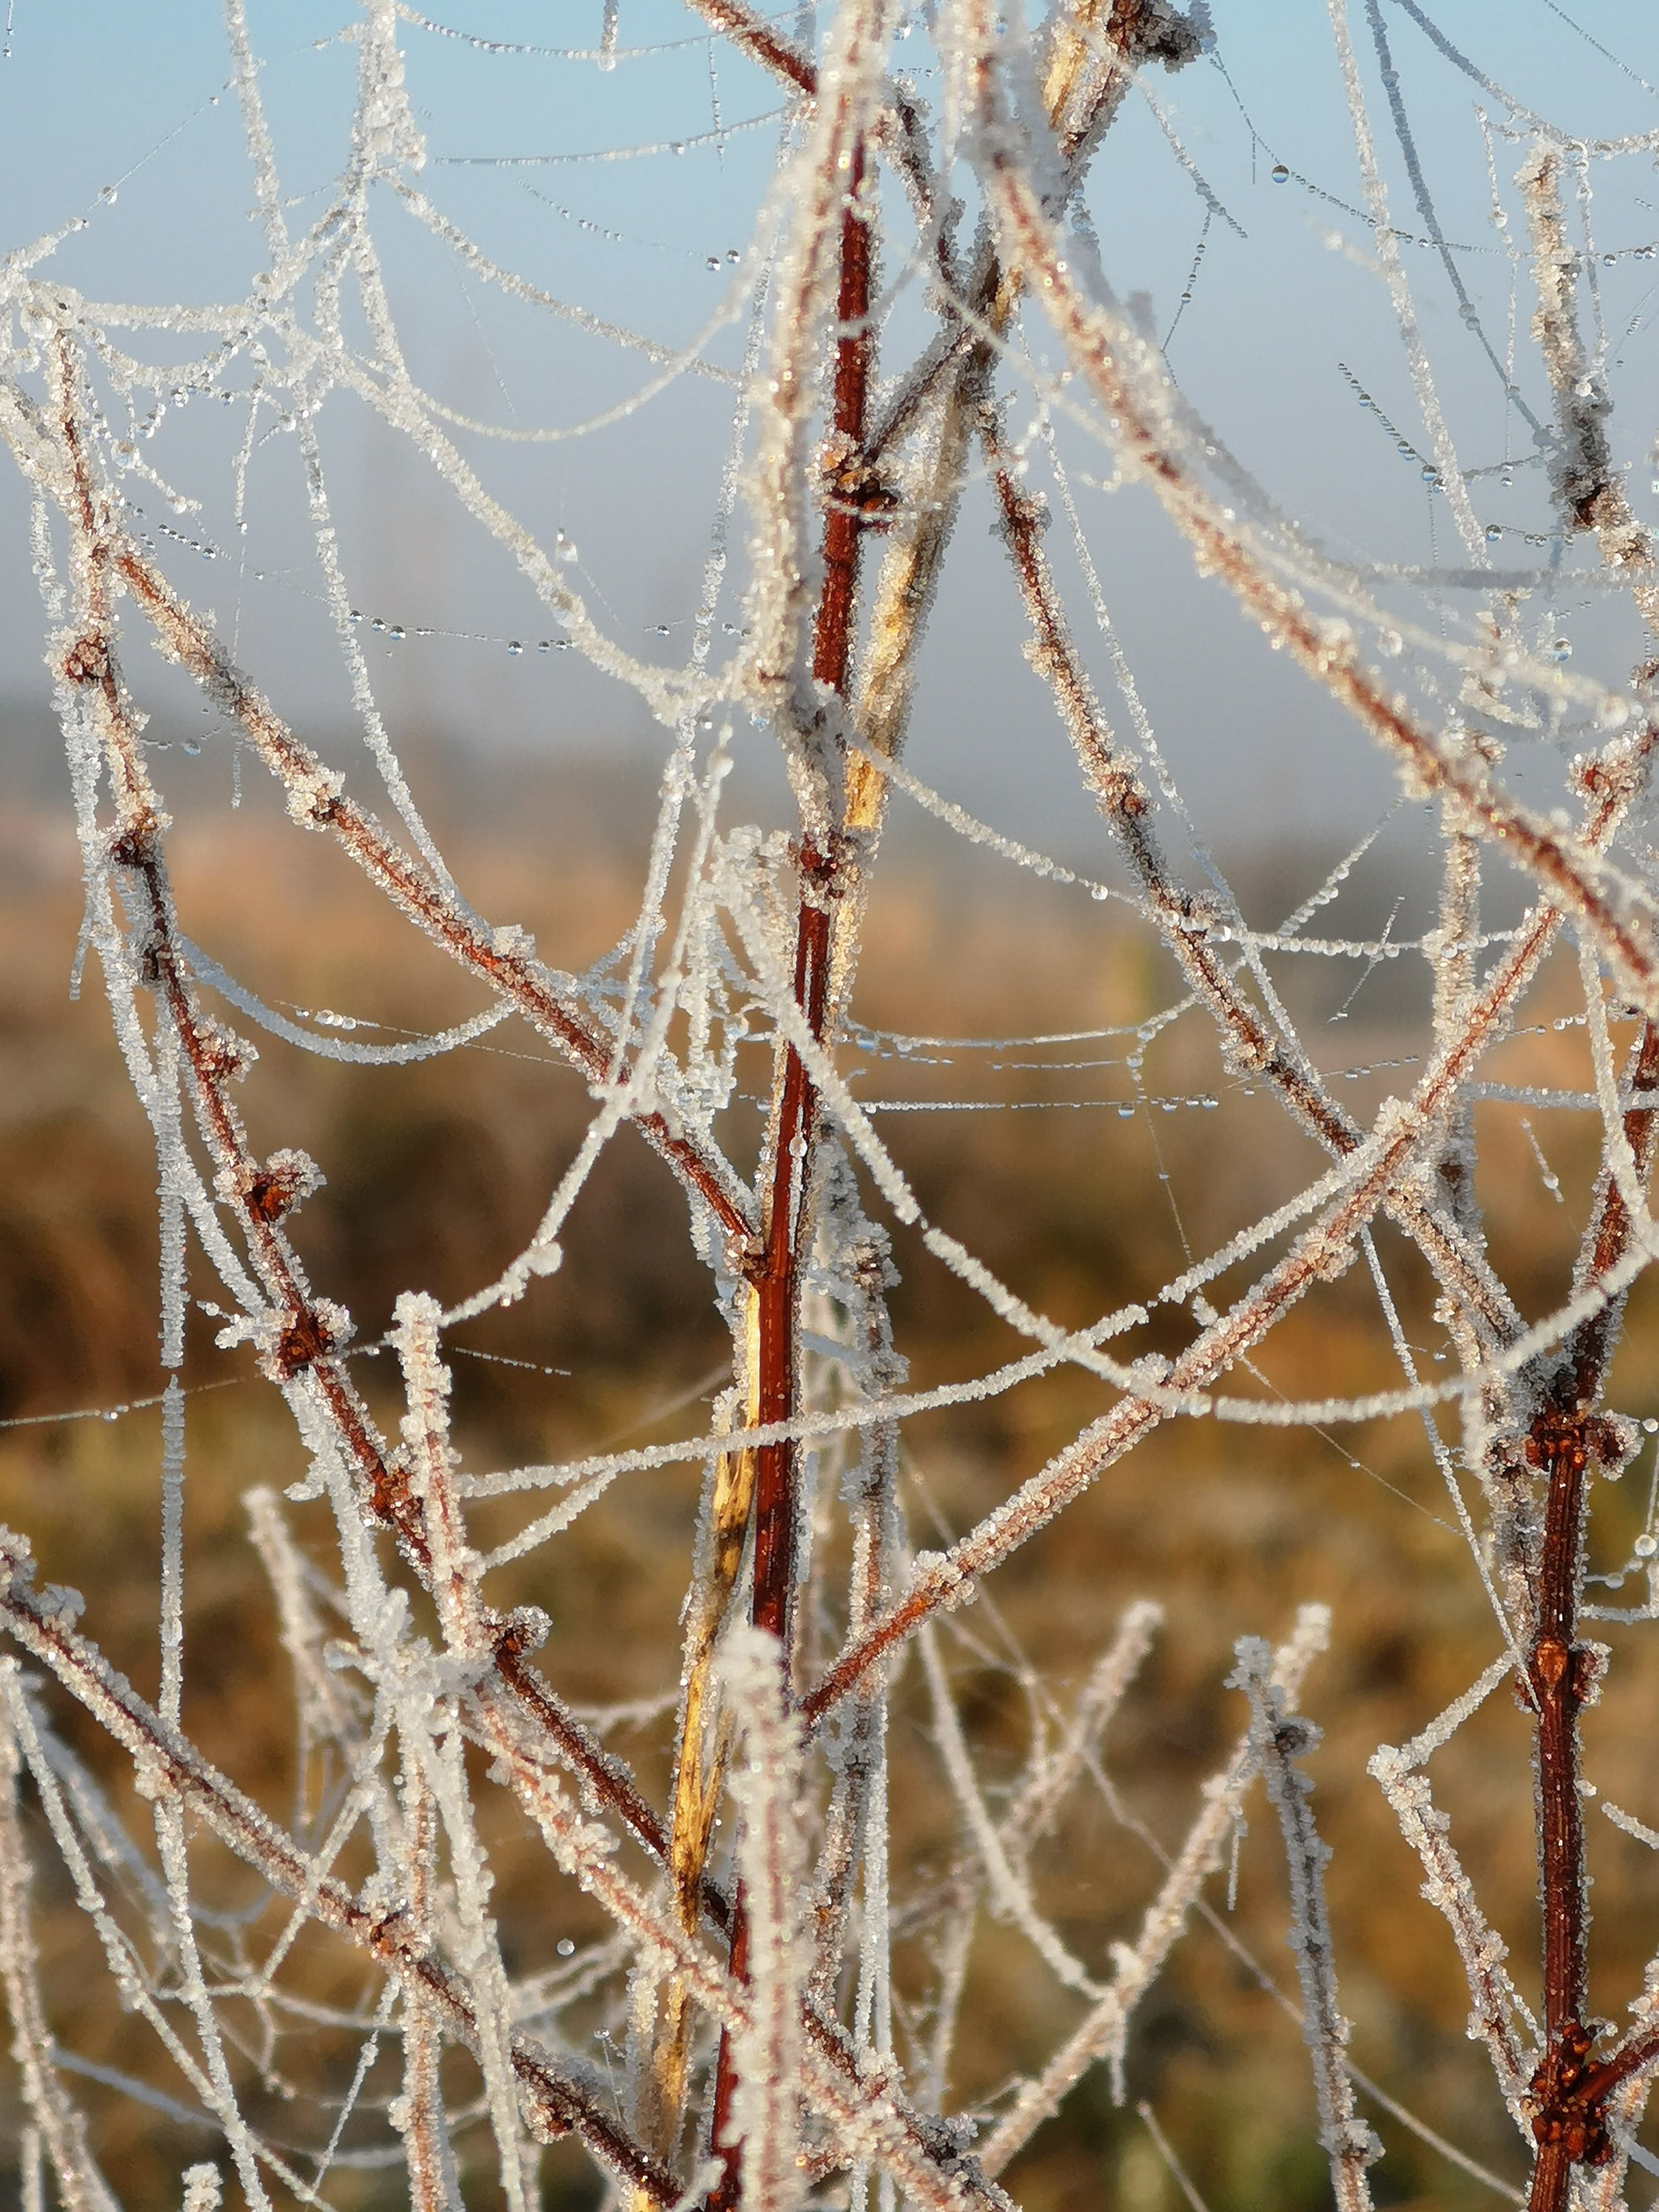 Iced cobwebs